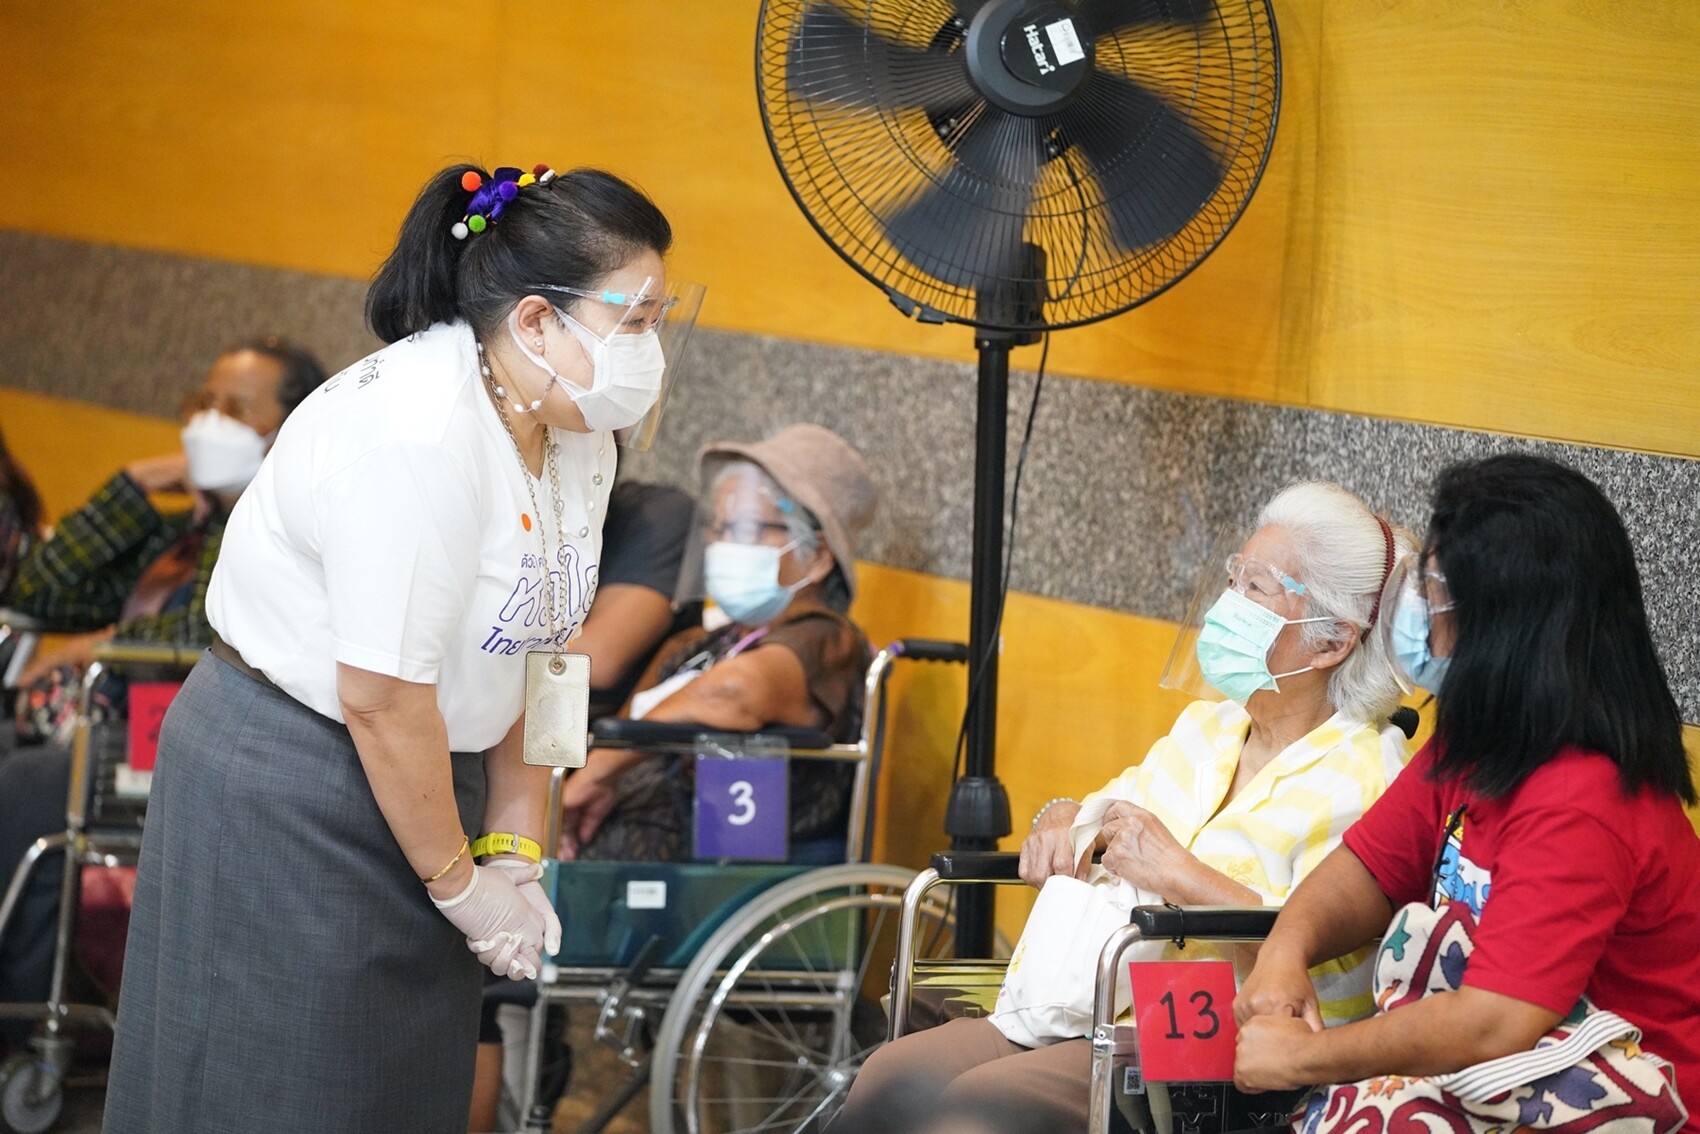 ธนาคารไทยพาณิชย์รวมใจฝ่าวิกฤติโควิด-19 ภูมิใจที่ได้ดูแลคนไทยกว่า 2 แสนคนให้เข้าถึงวัคซีน ปลอดภัยจากโควิด-19